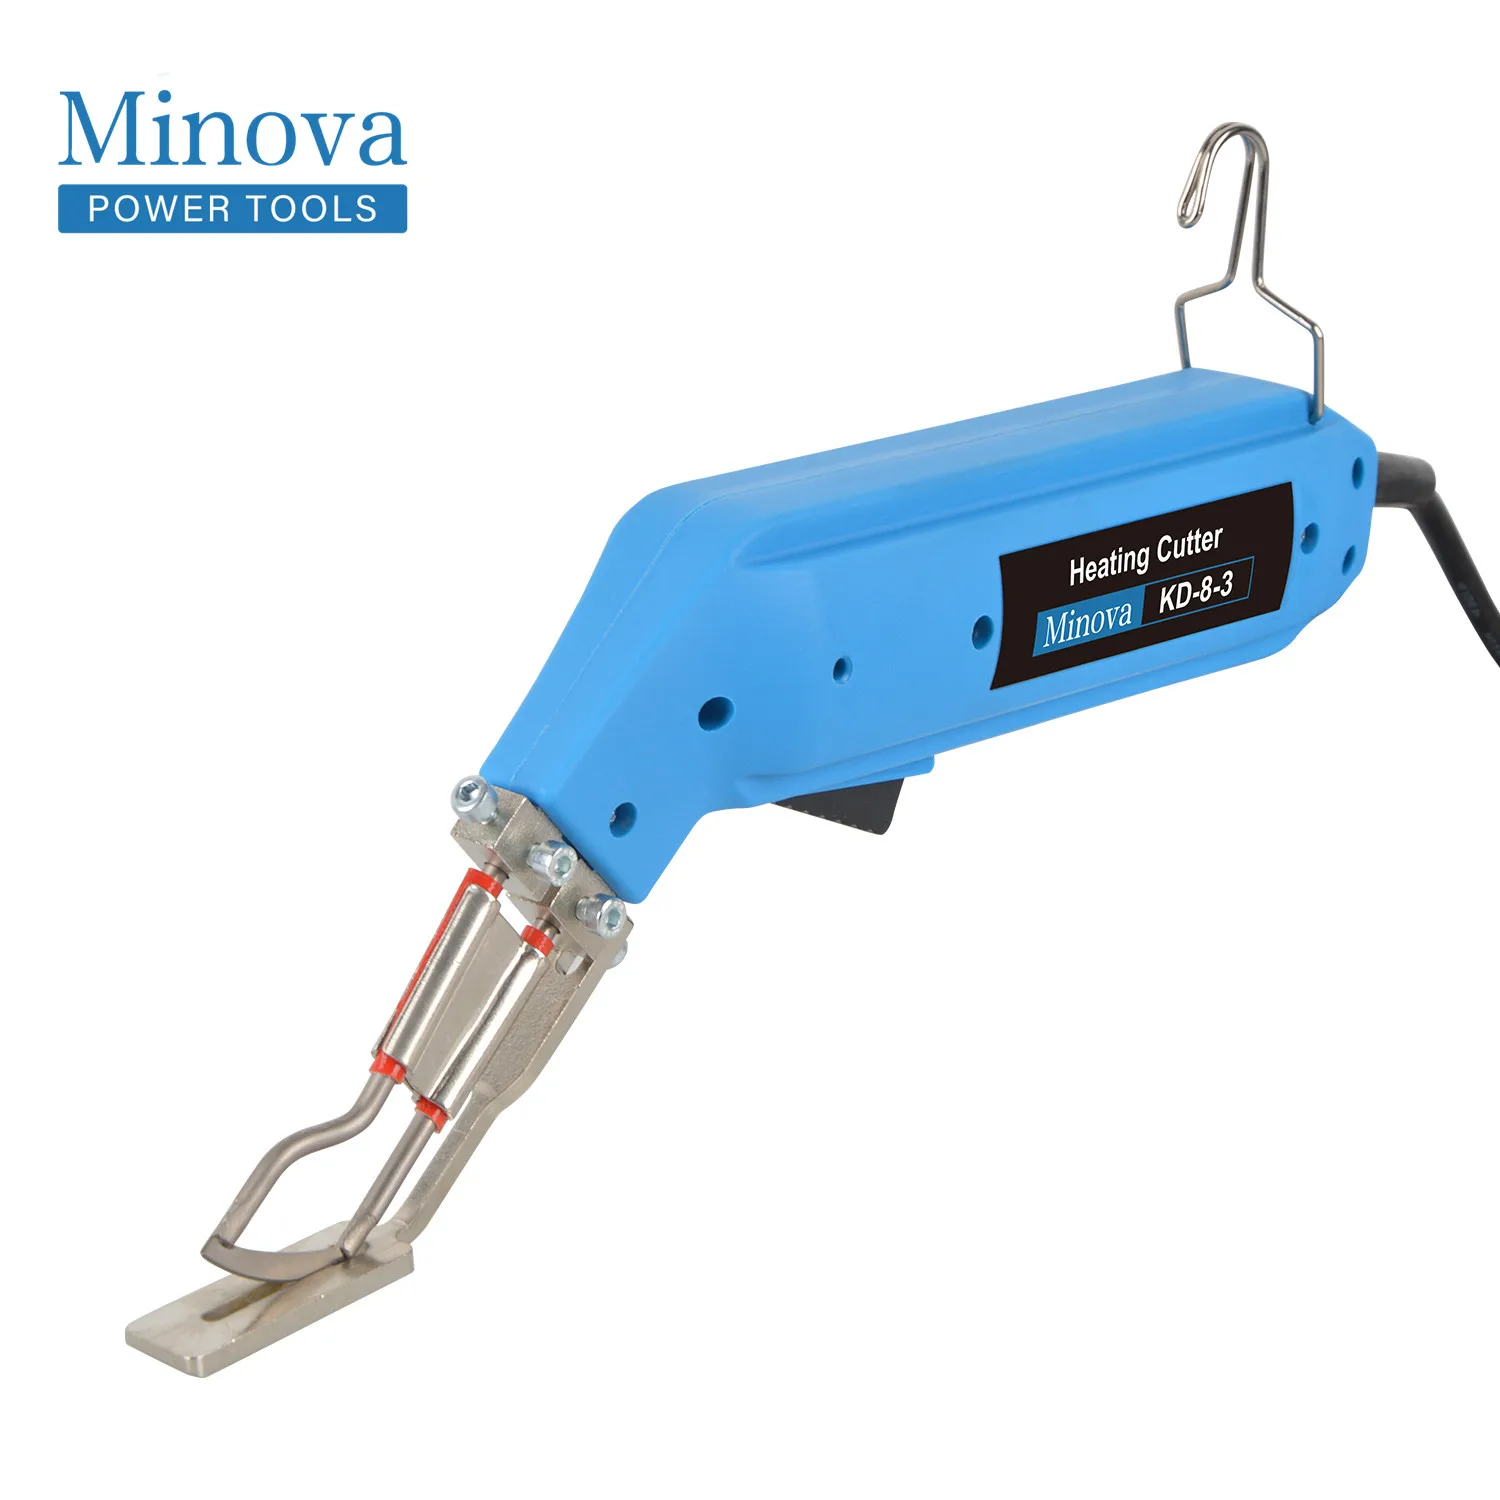 

Minova Hot Knife Electric Rope Cutter Ribbon Cutter fabric cutter KD-8-3 60W